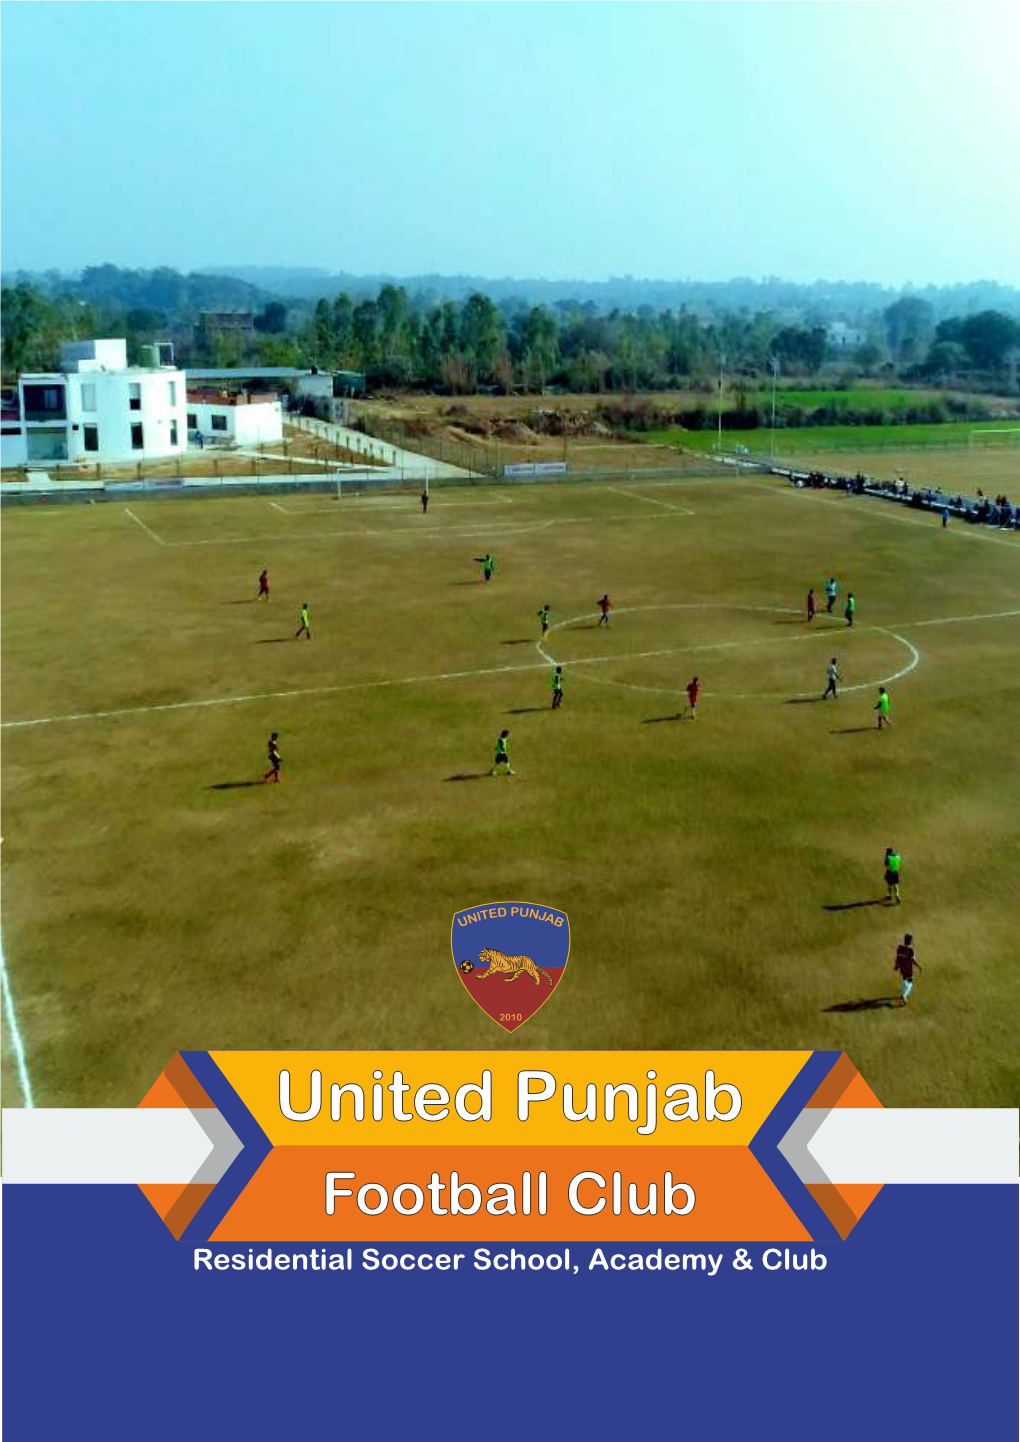 United Punjab Football Club United Punjab Residential Football School, Academy & Club